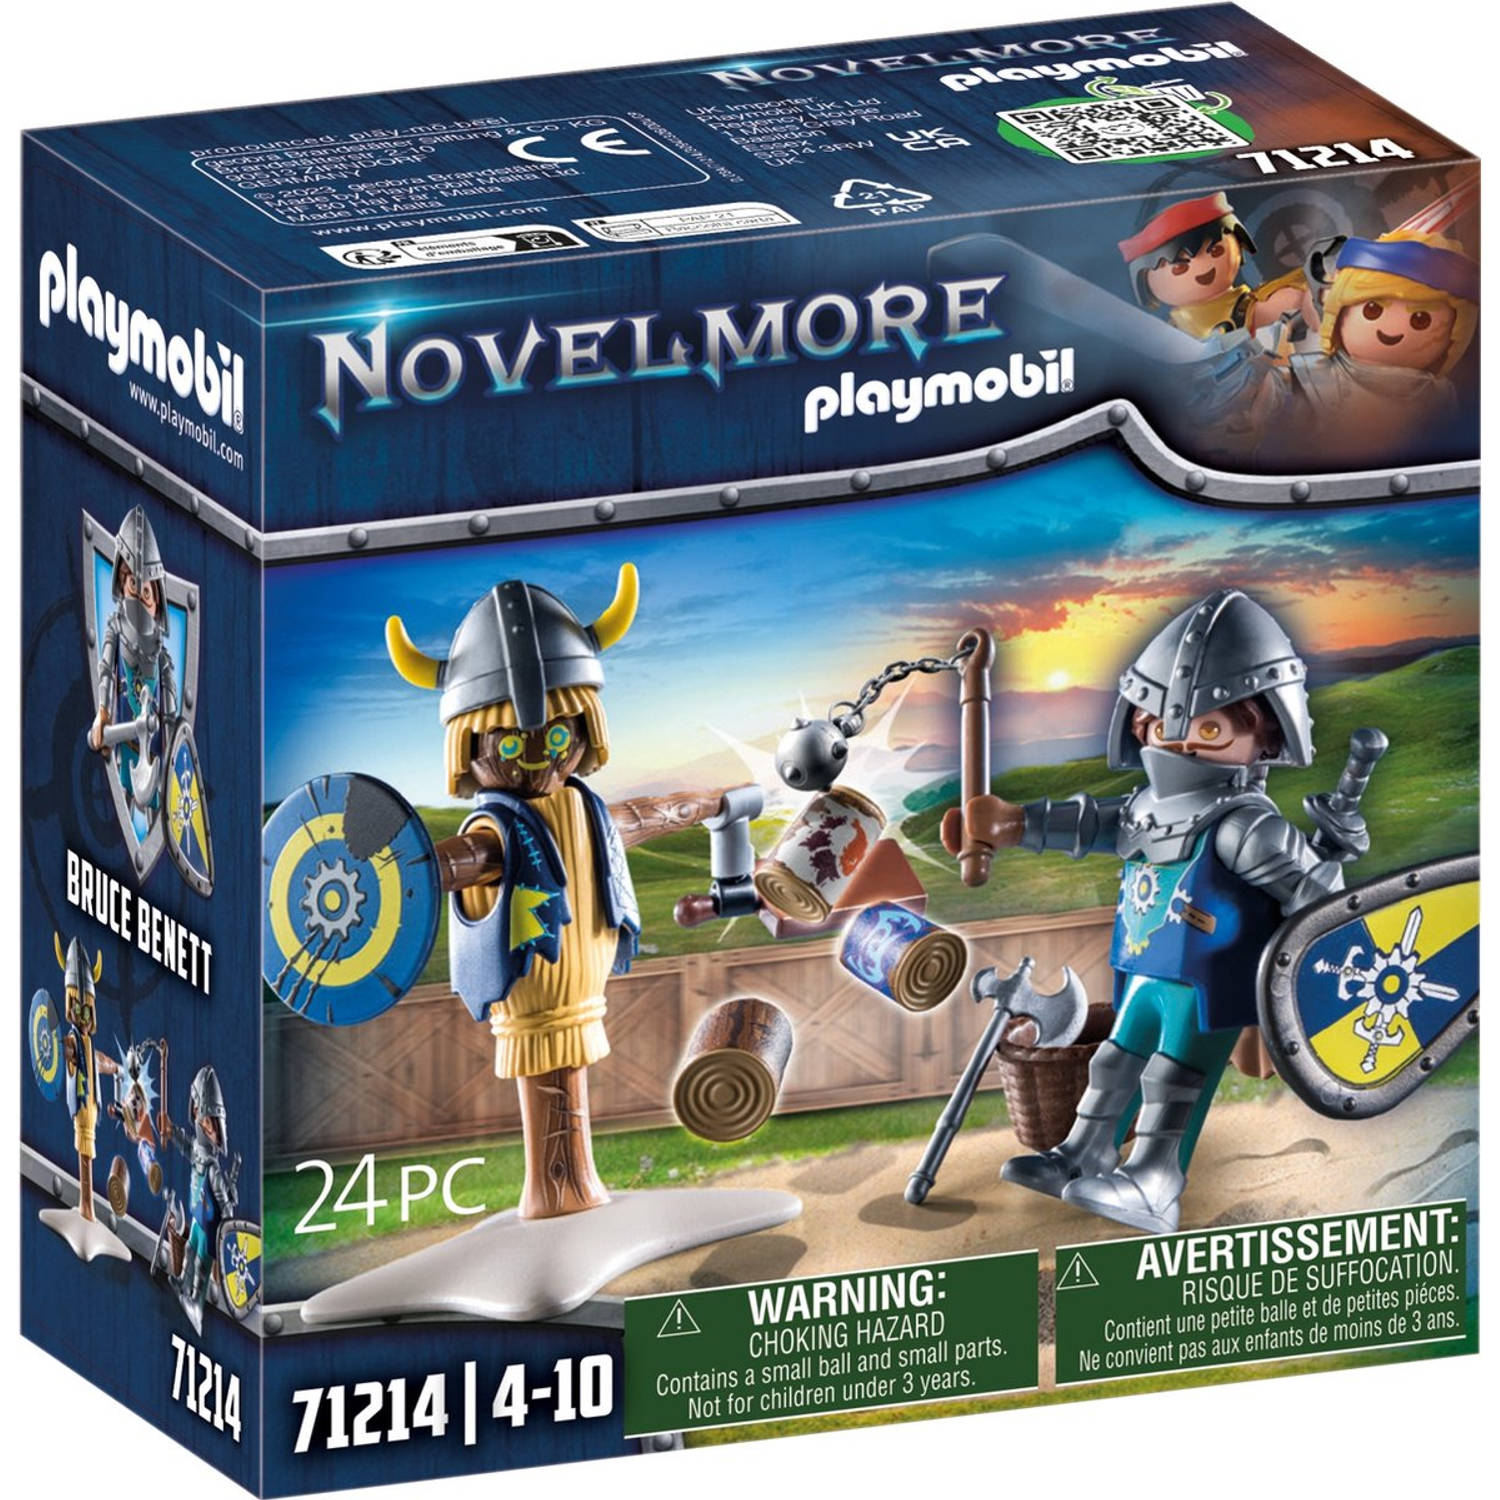 Playmobil® Constructie-speelset Novelmore Kampftraining (71214), Novelmore (24 stuks)